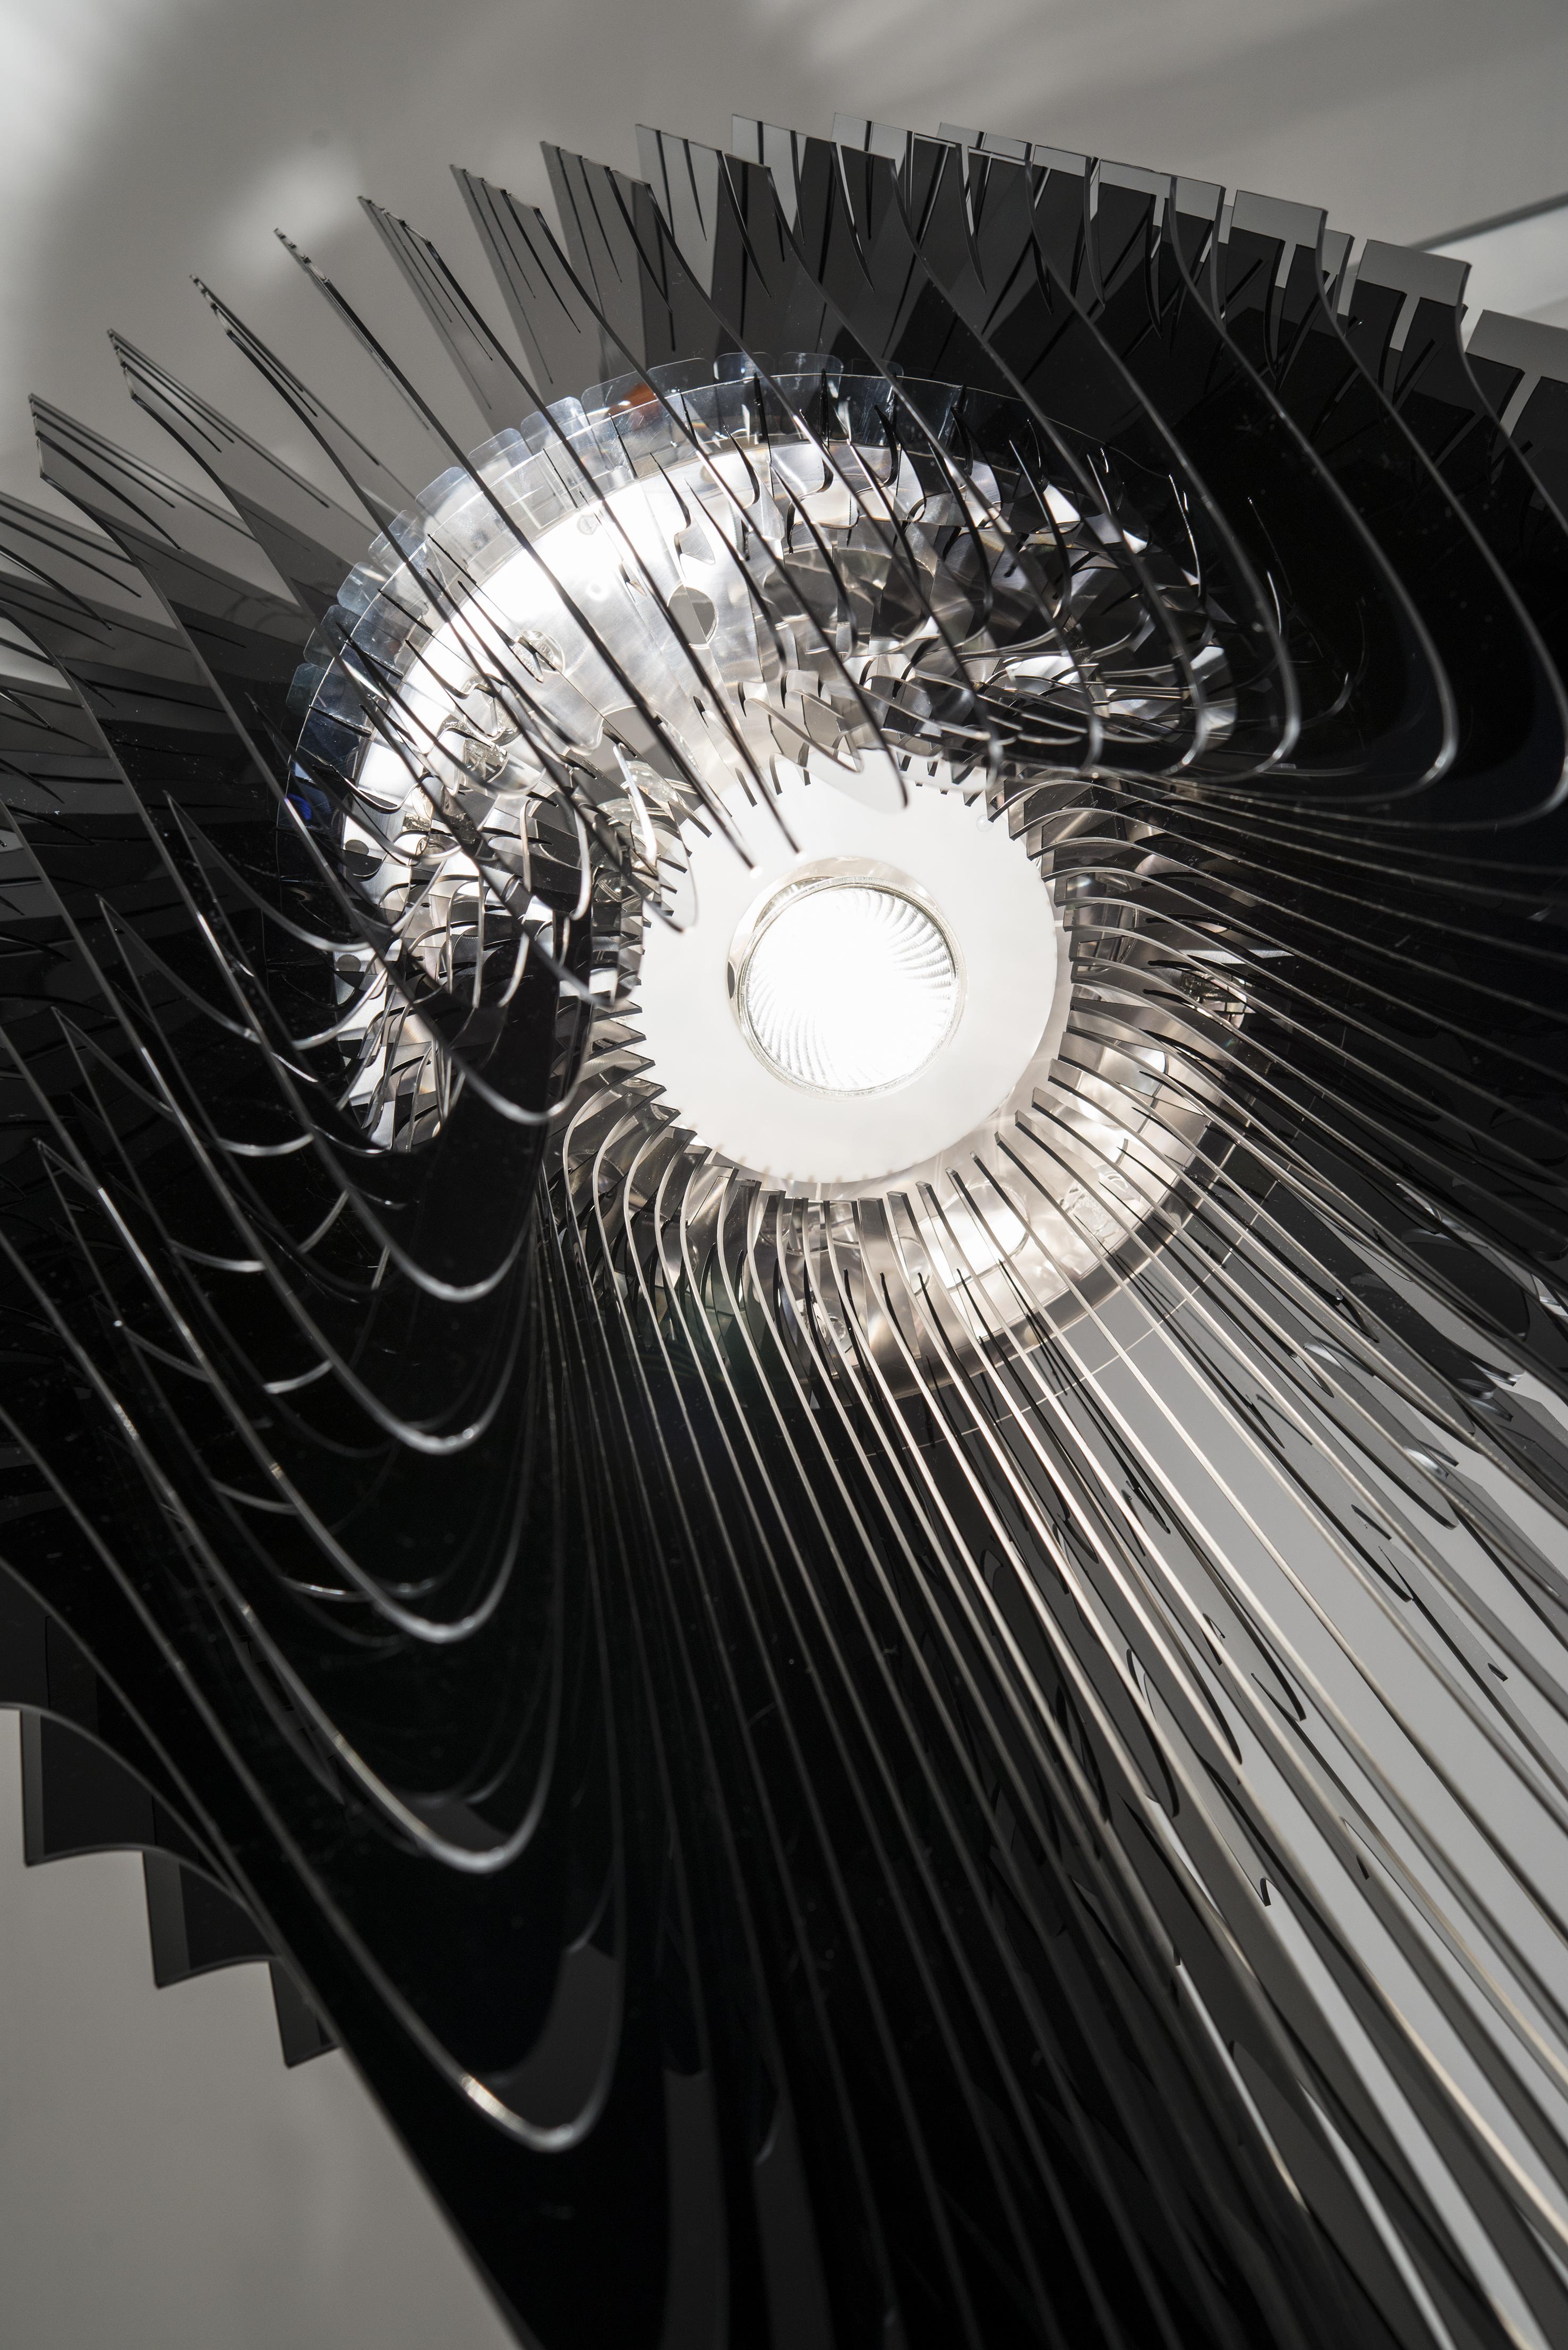 Les objets architecturaux lumineux visionnaires, fluides et dynamiques de Zaha Hadid apportent la sémantique révolutionnaire et iconique de la designer à tout espace domestique ou public, inspirant l'harmonie entre les êtres et les atmosphères. Avia